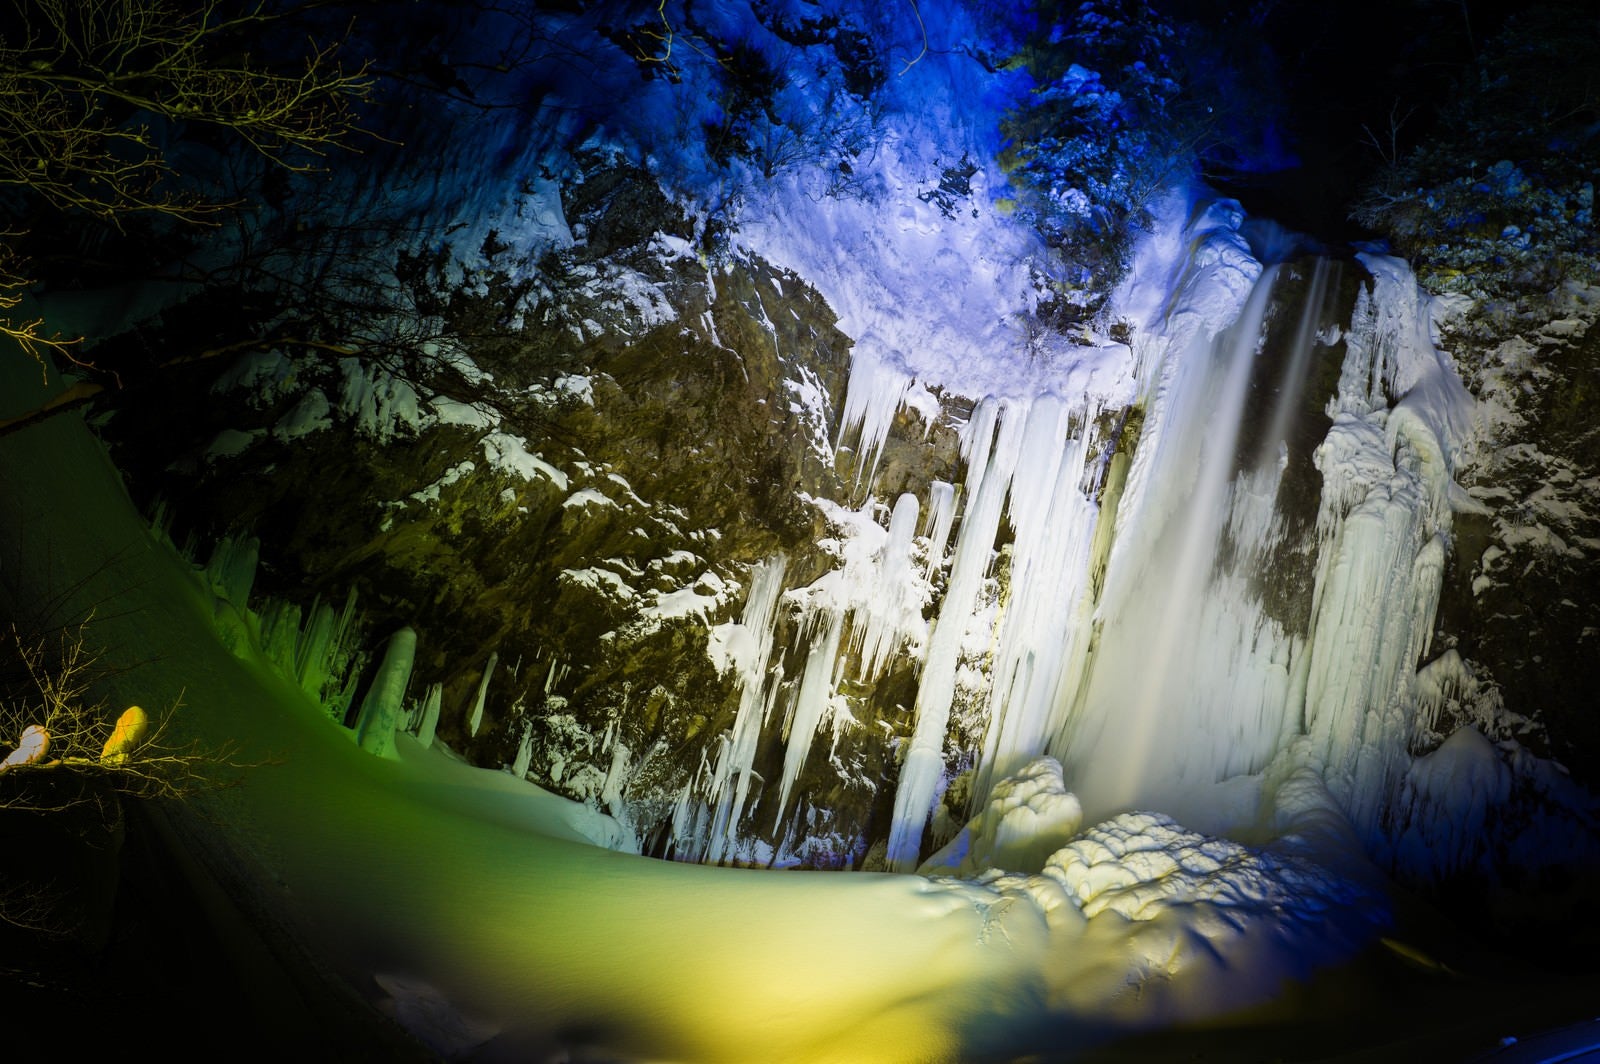 「平湯大滝結氷まつりのライトアップ」の写真